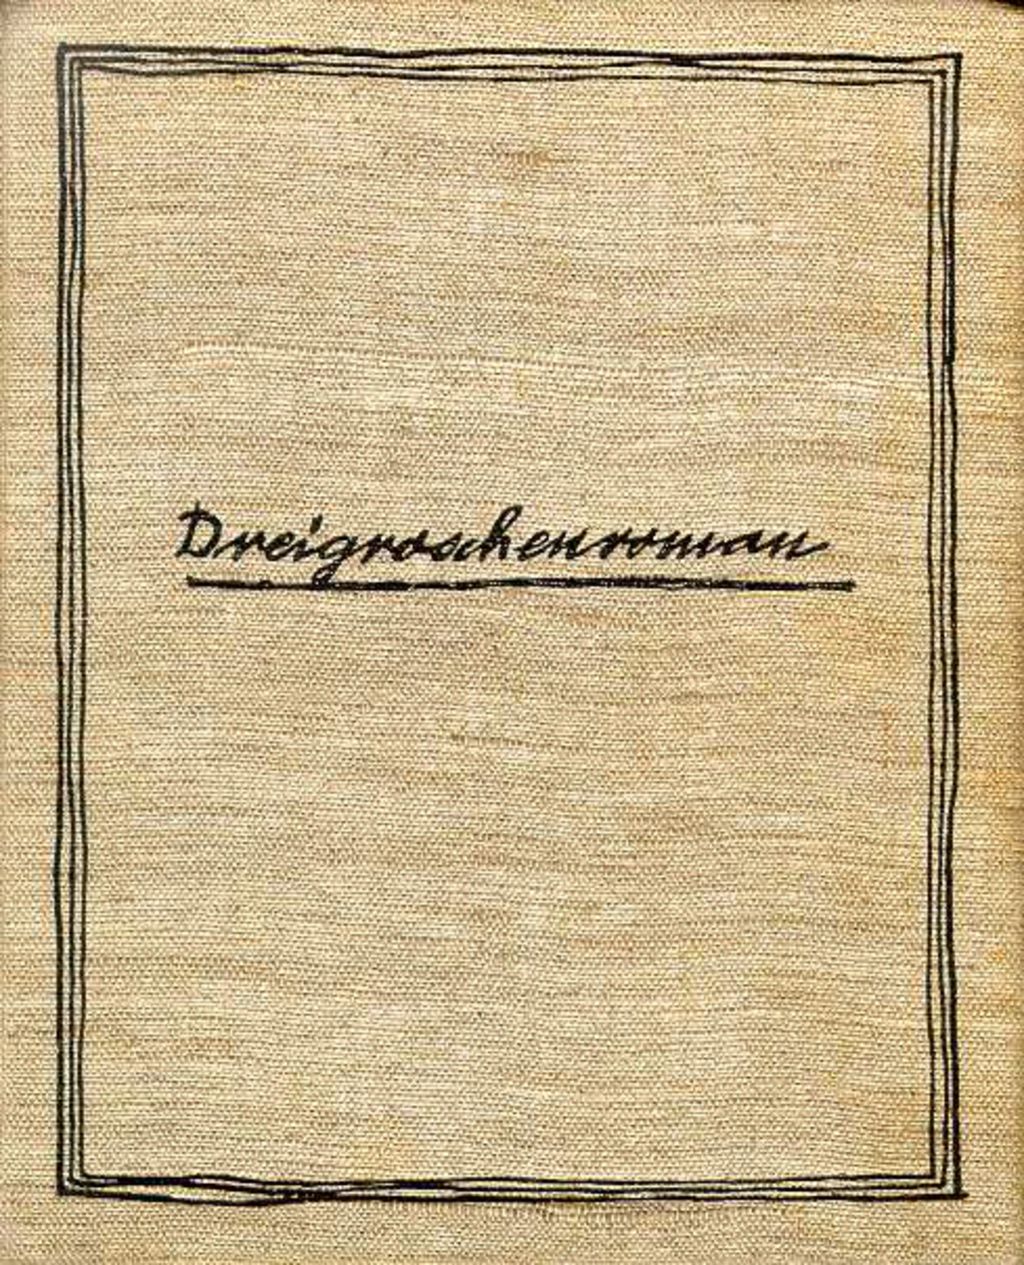 Buch: Brecht, Bertolt "Dreigroschenroman", 1934